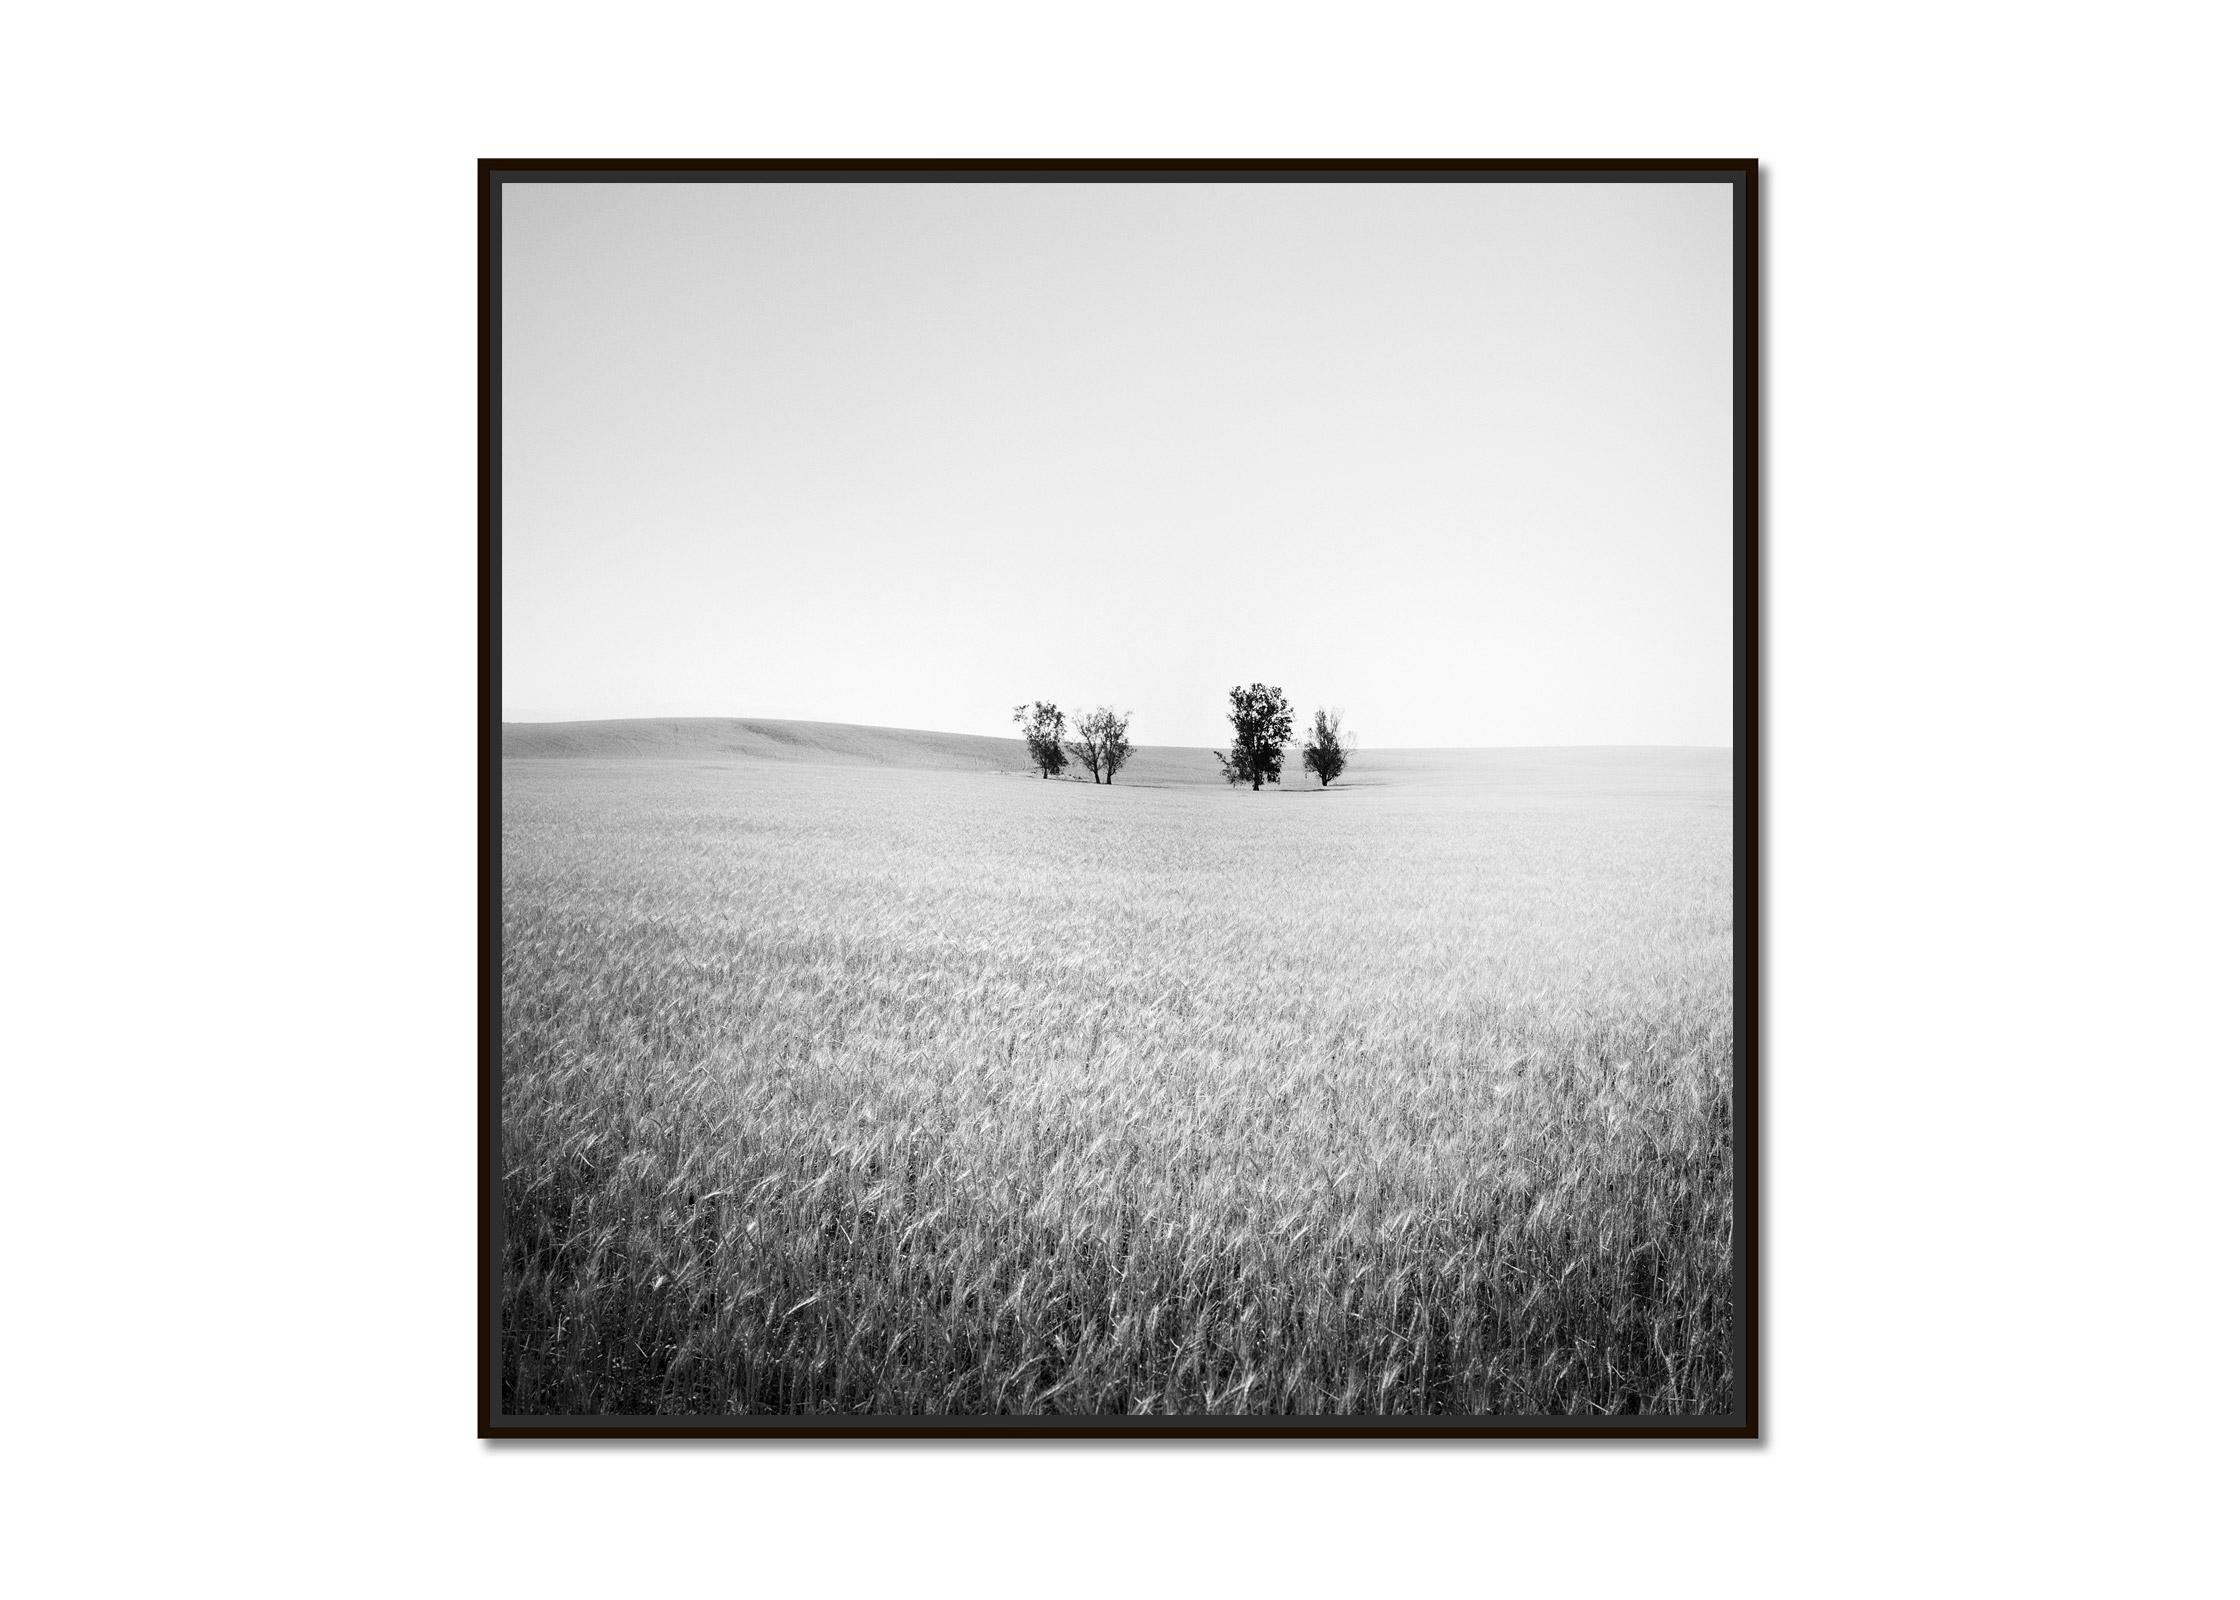 Bäume auf Weizen field, Kalifornien, USA, Schwarz-Weiß-Landschaftsfotografie – Photograph von Gerald Berghammer